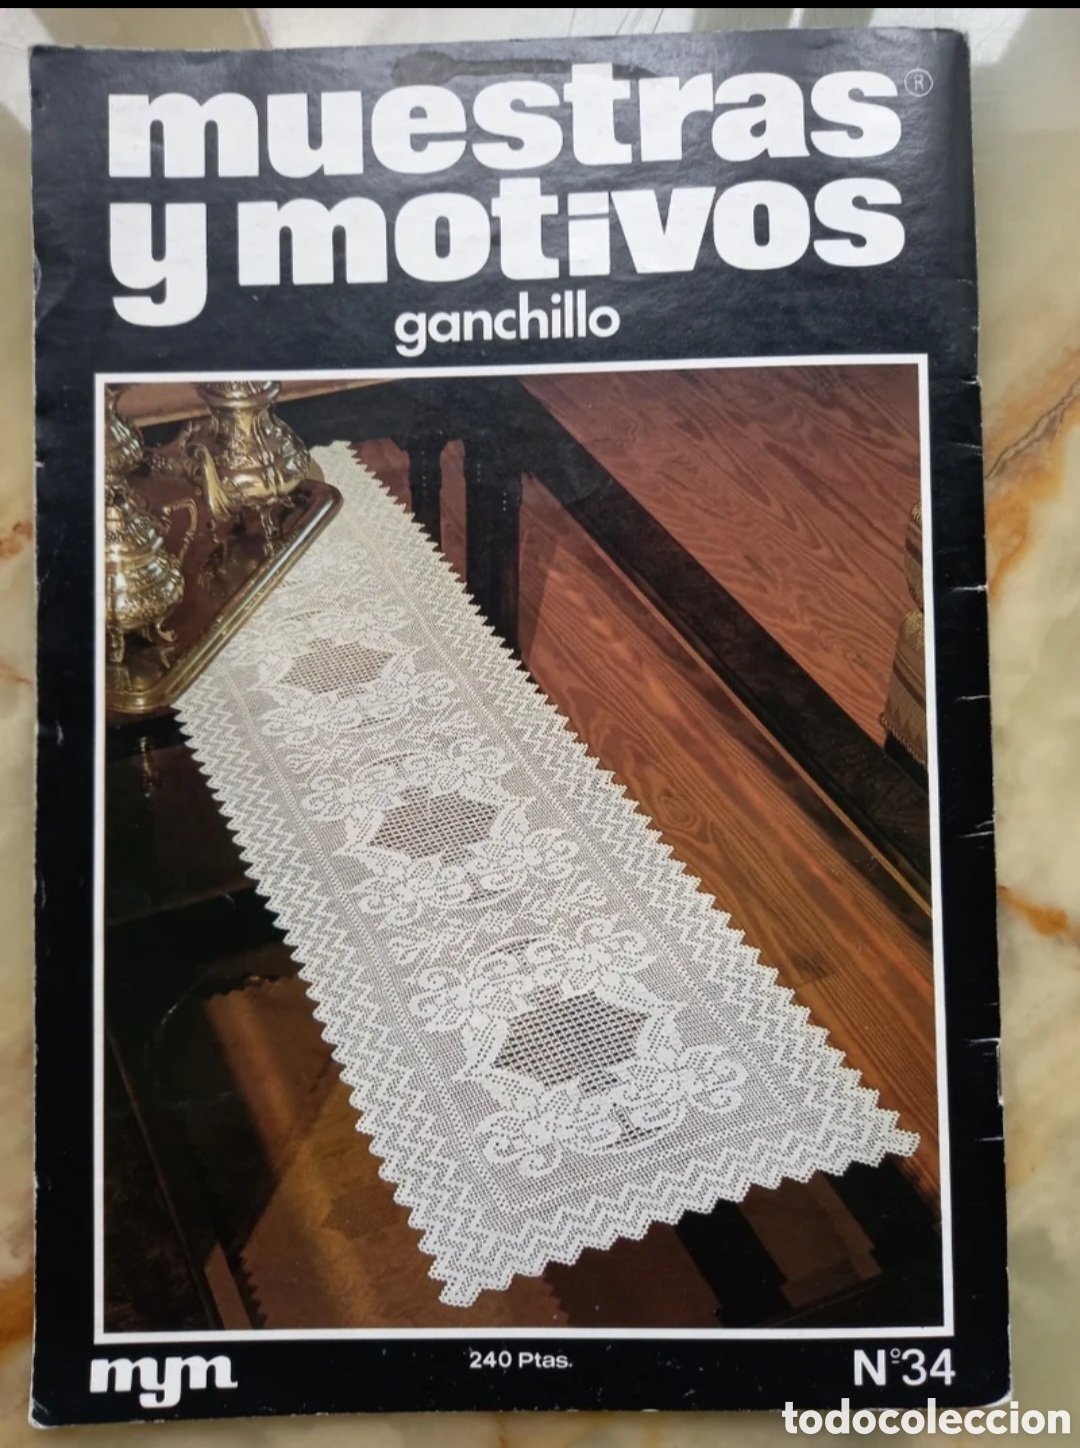 muestras y motivos, revista de ganchillo - Buy Antique music magazines,  manuals and courses on todocoleccion